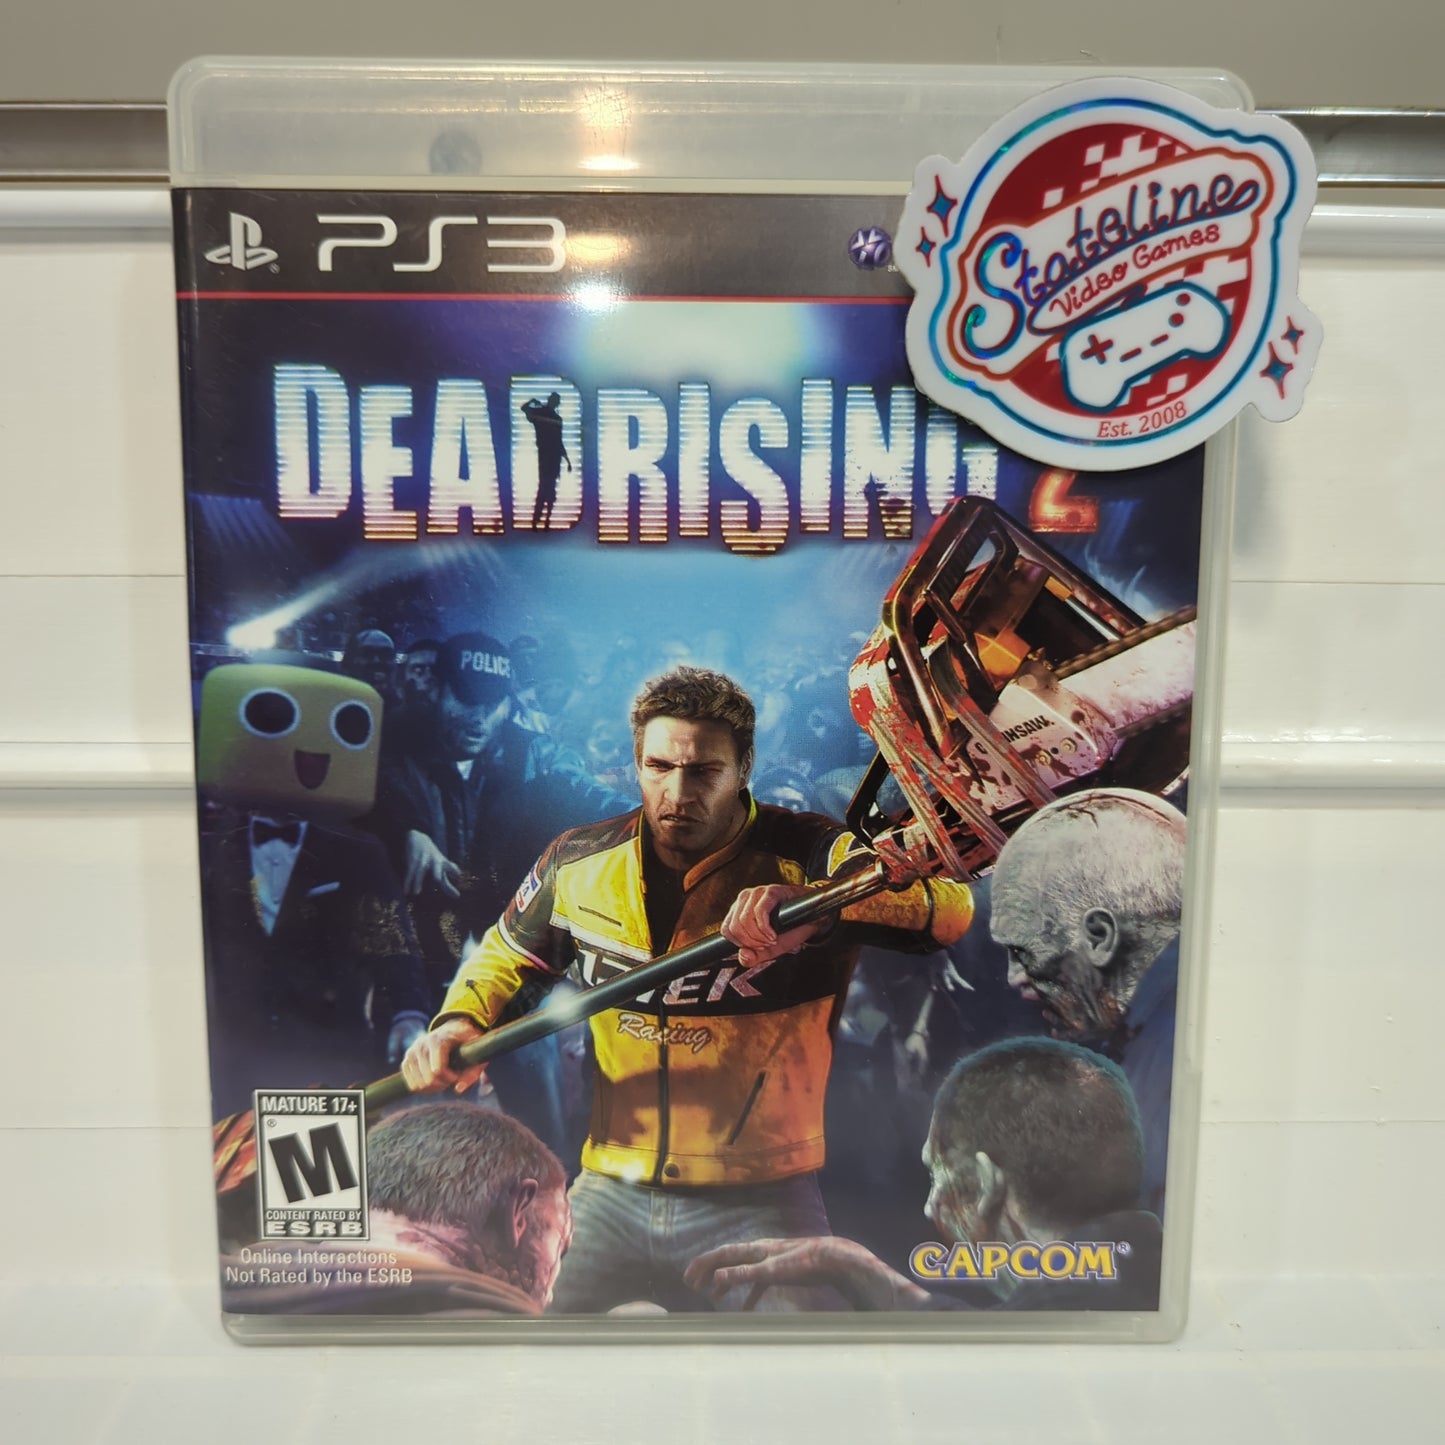 Dead Rising 2 - Playstation 3